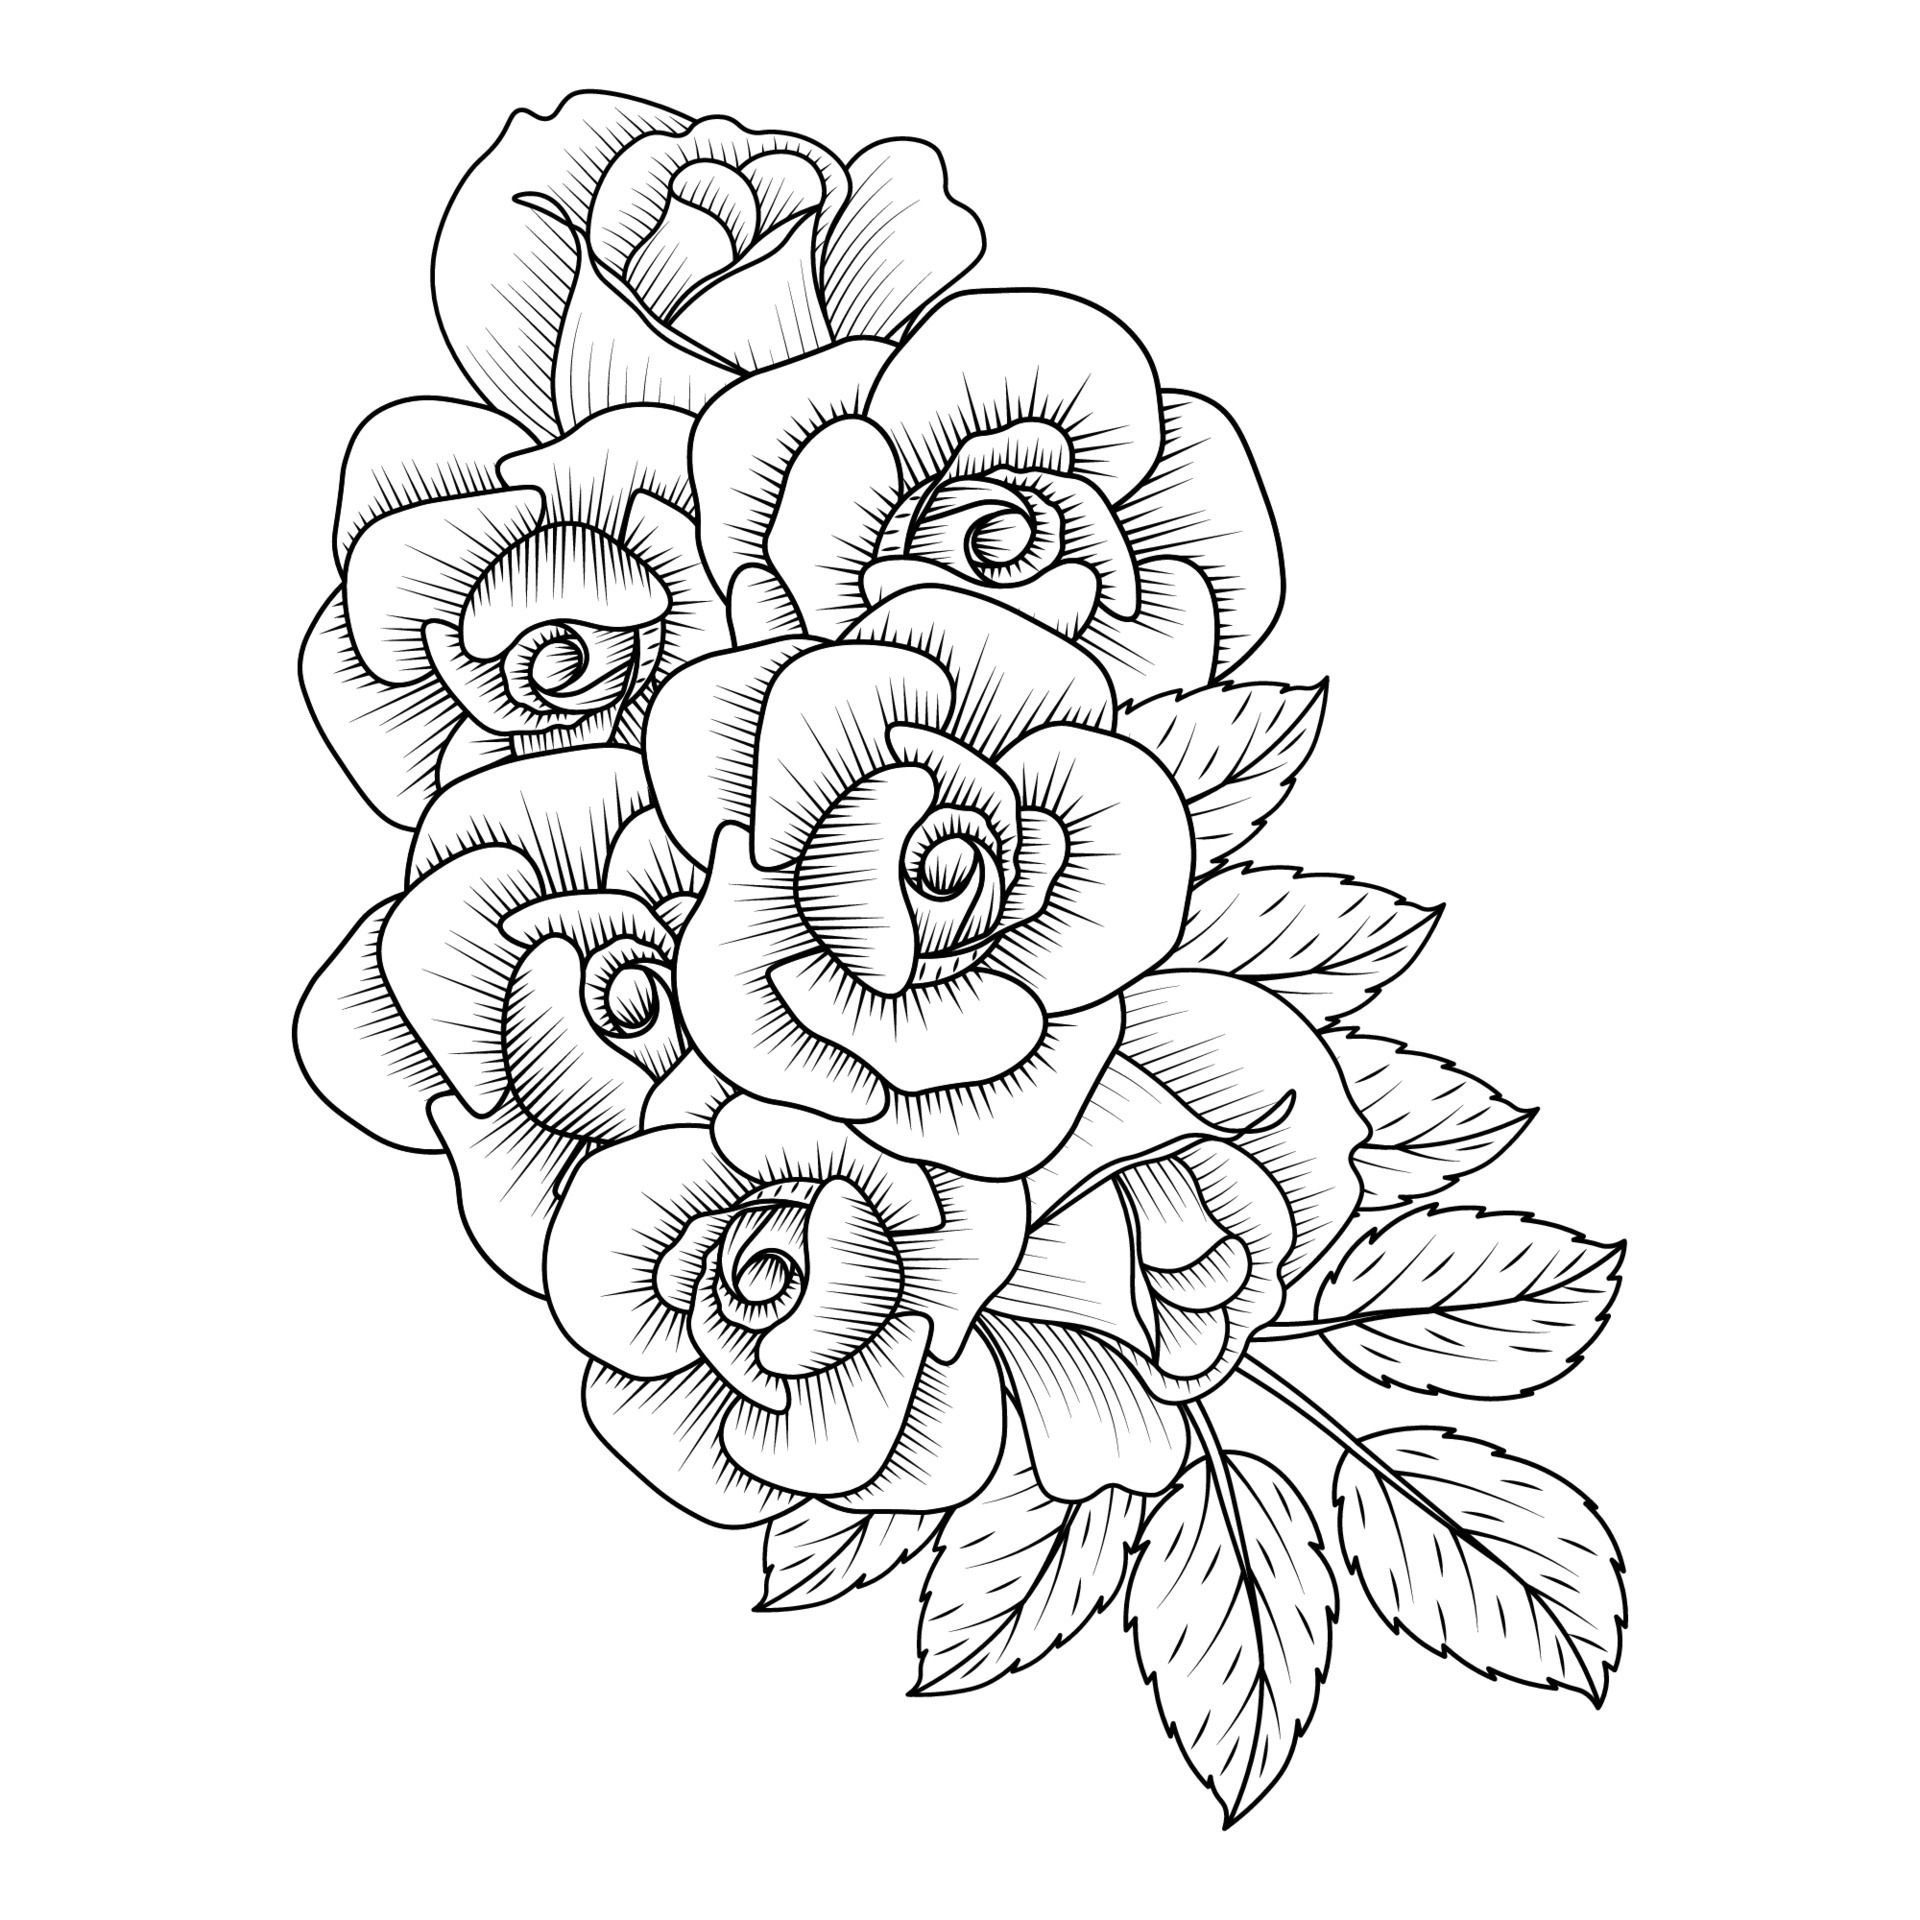 Minimalist Flower one line drawing. Simple line... - Stock Illustration  [75836563] - PIXTA